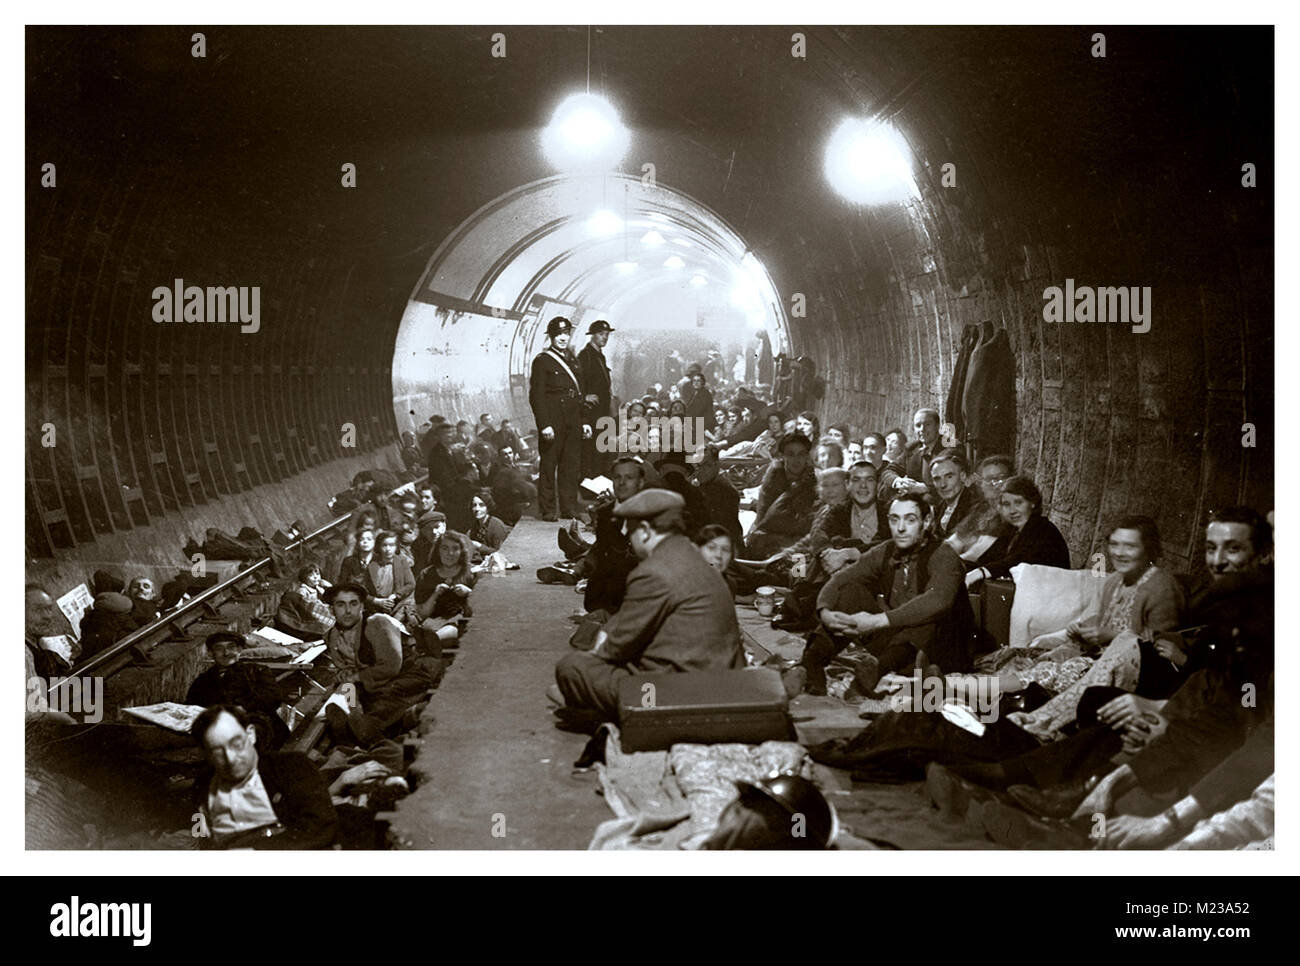 WW2 1940er U-Bahn-Station Unterschlupf London Blitz.. Die U-Bahn-Station dient als sicherer Hafen für Londoner Einwohner gegen die anhaltenden Terroranschläge durch Nazi-Deutschland. Adolf Hitler versuchte, die wichtigsten Bevölkerungszentren in England mit Hilfe der Nazi-Luftwaffe konzentriert aus der Luft zu bombardieren, um zu versuchen, die lokale britische Bevölkerung zu terrorisieren Stockfoto